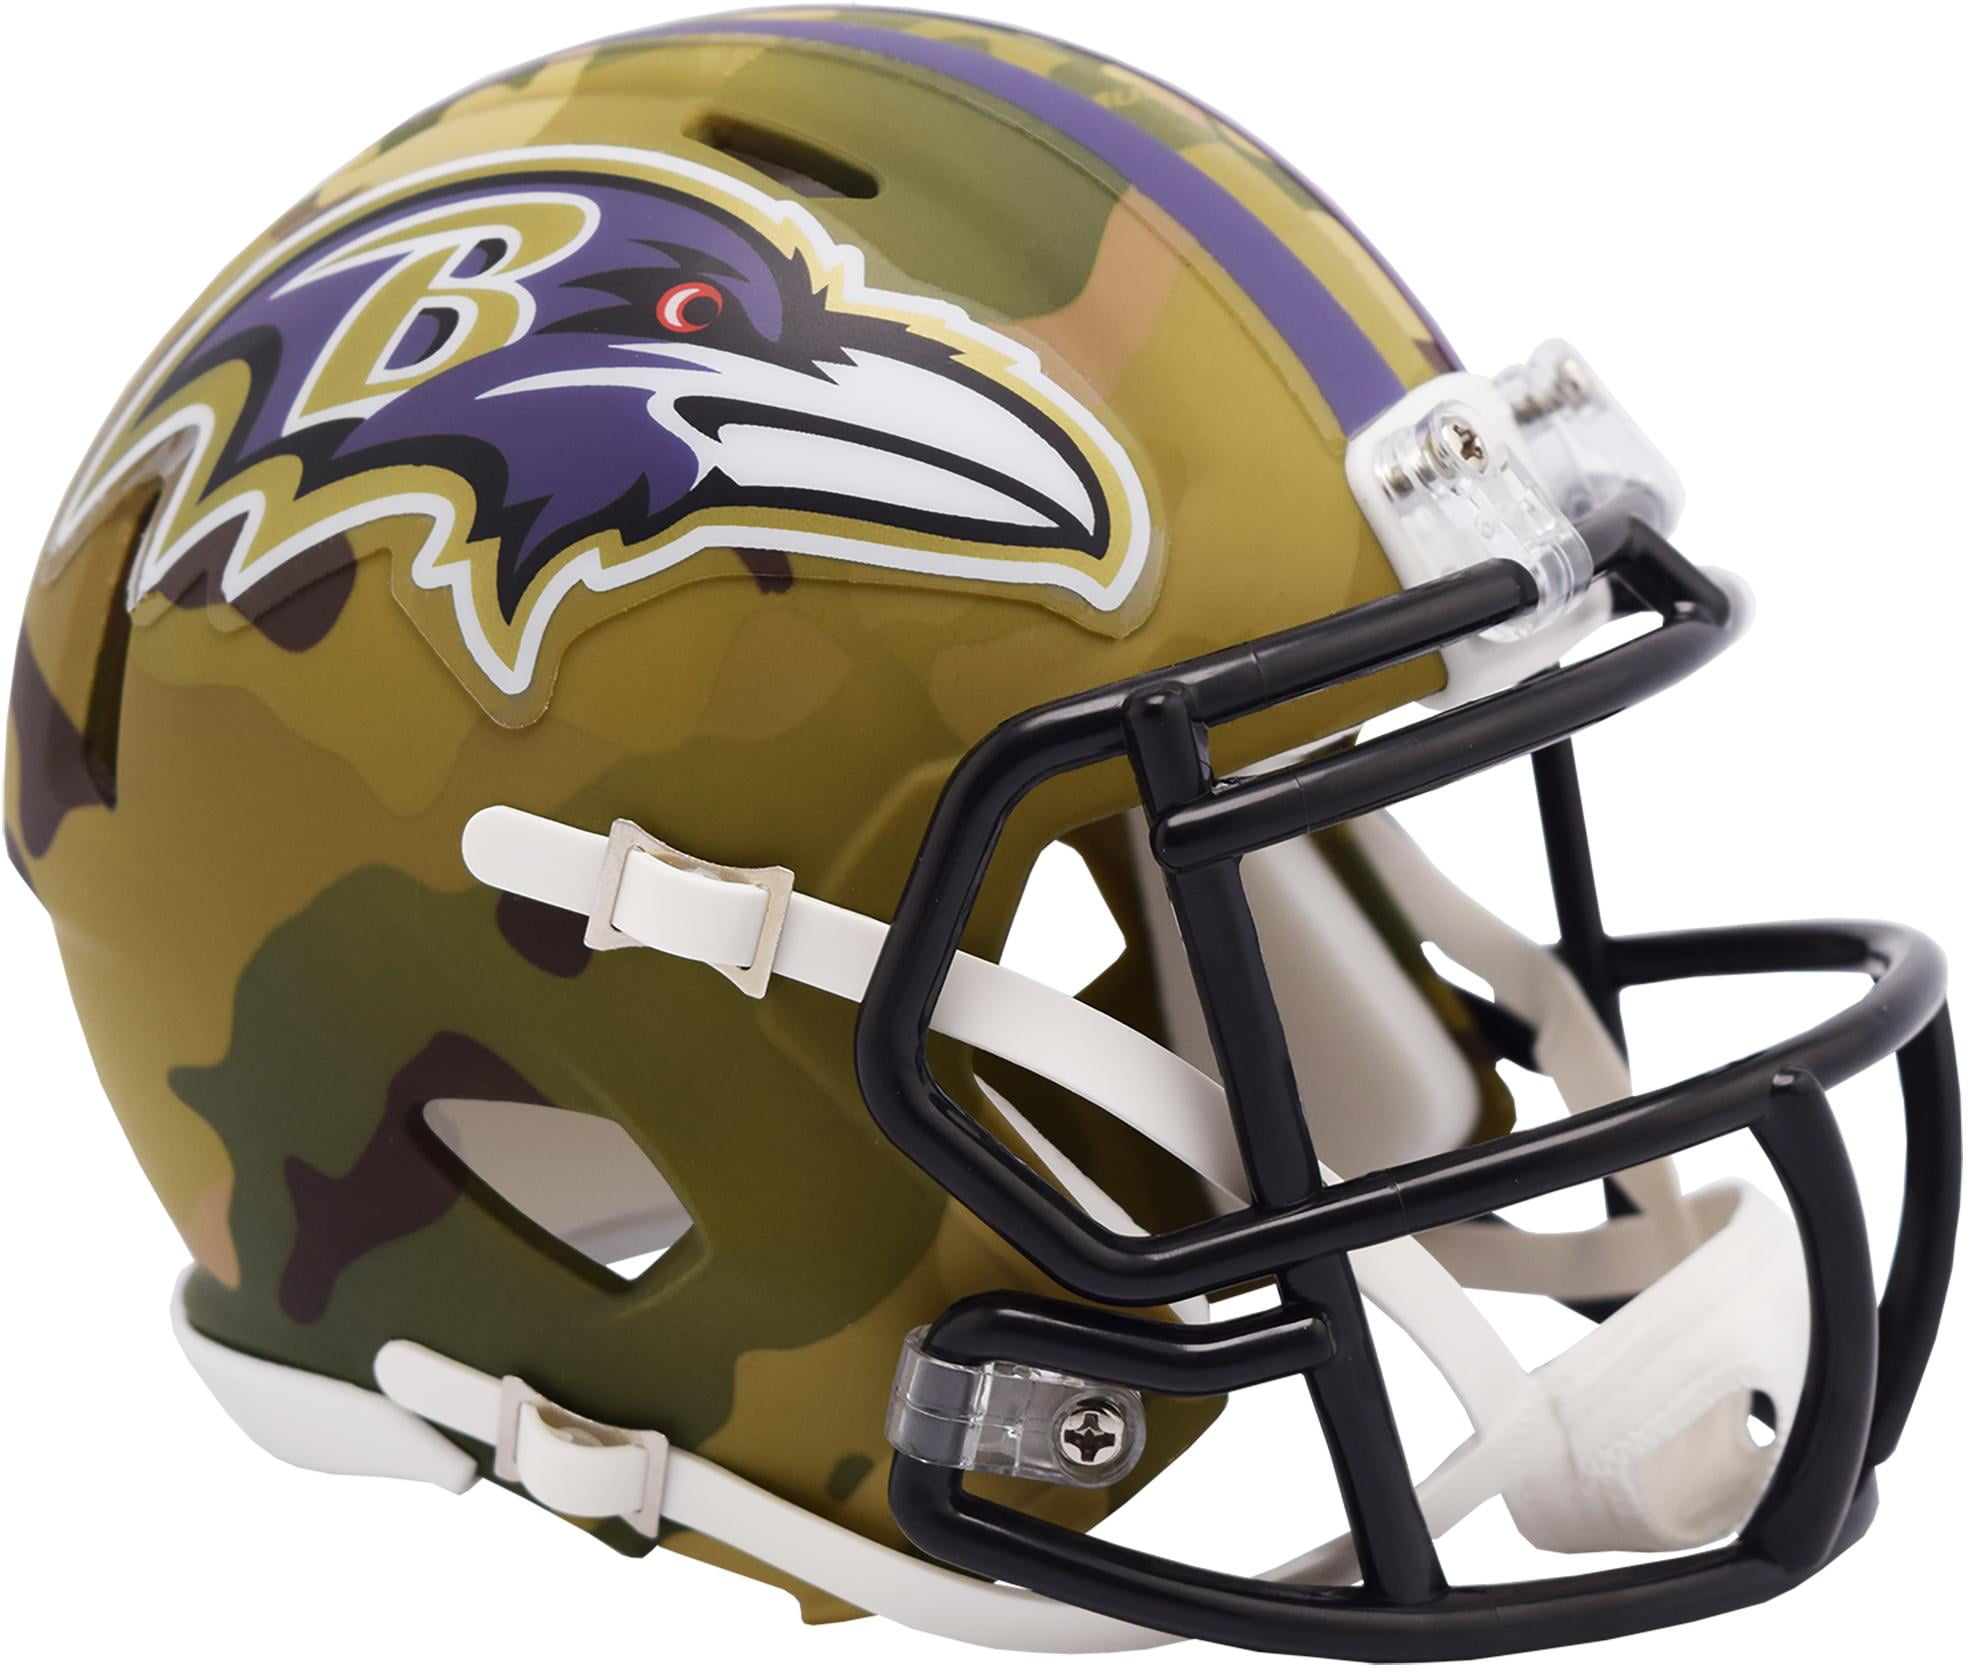 New in Riddell Box AMP Alternate Speed Riddell Mini Football Helmet Baltimore Ravens 